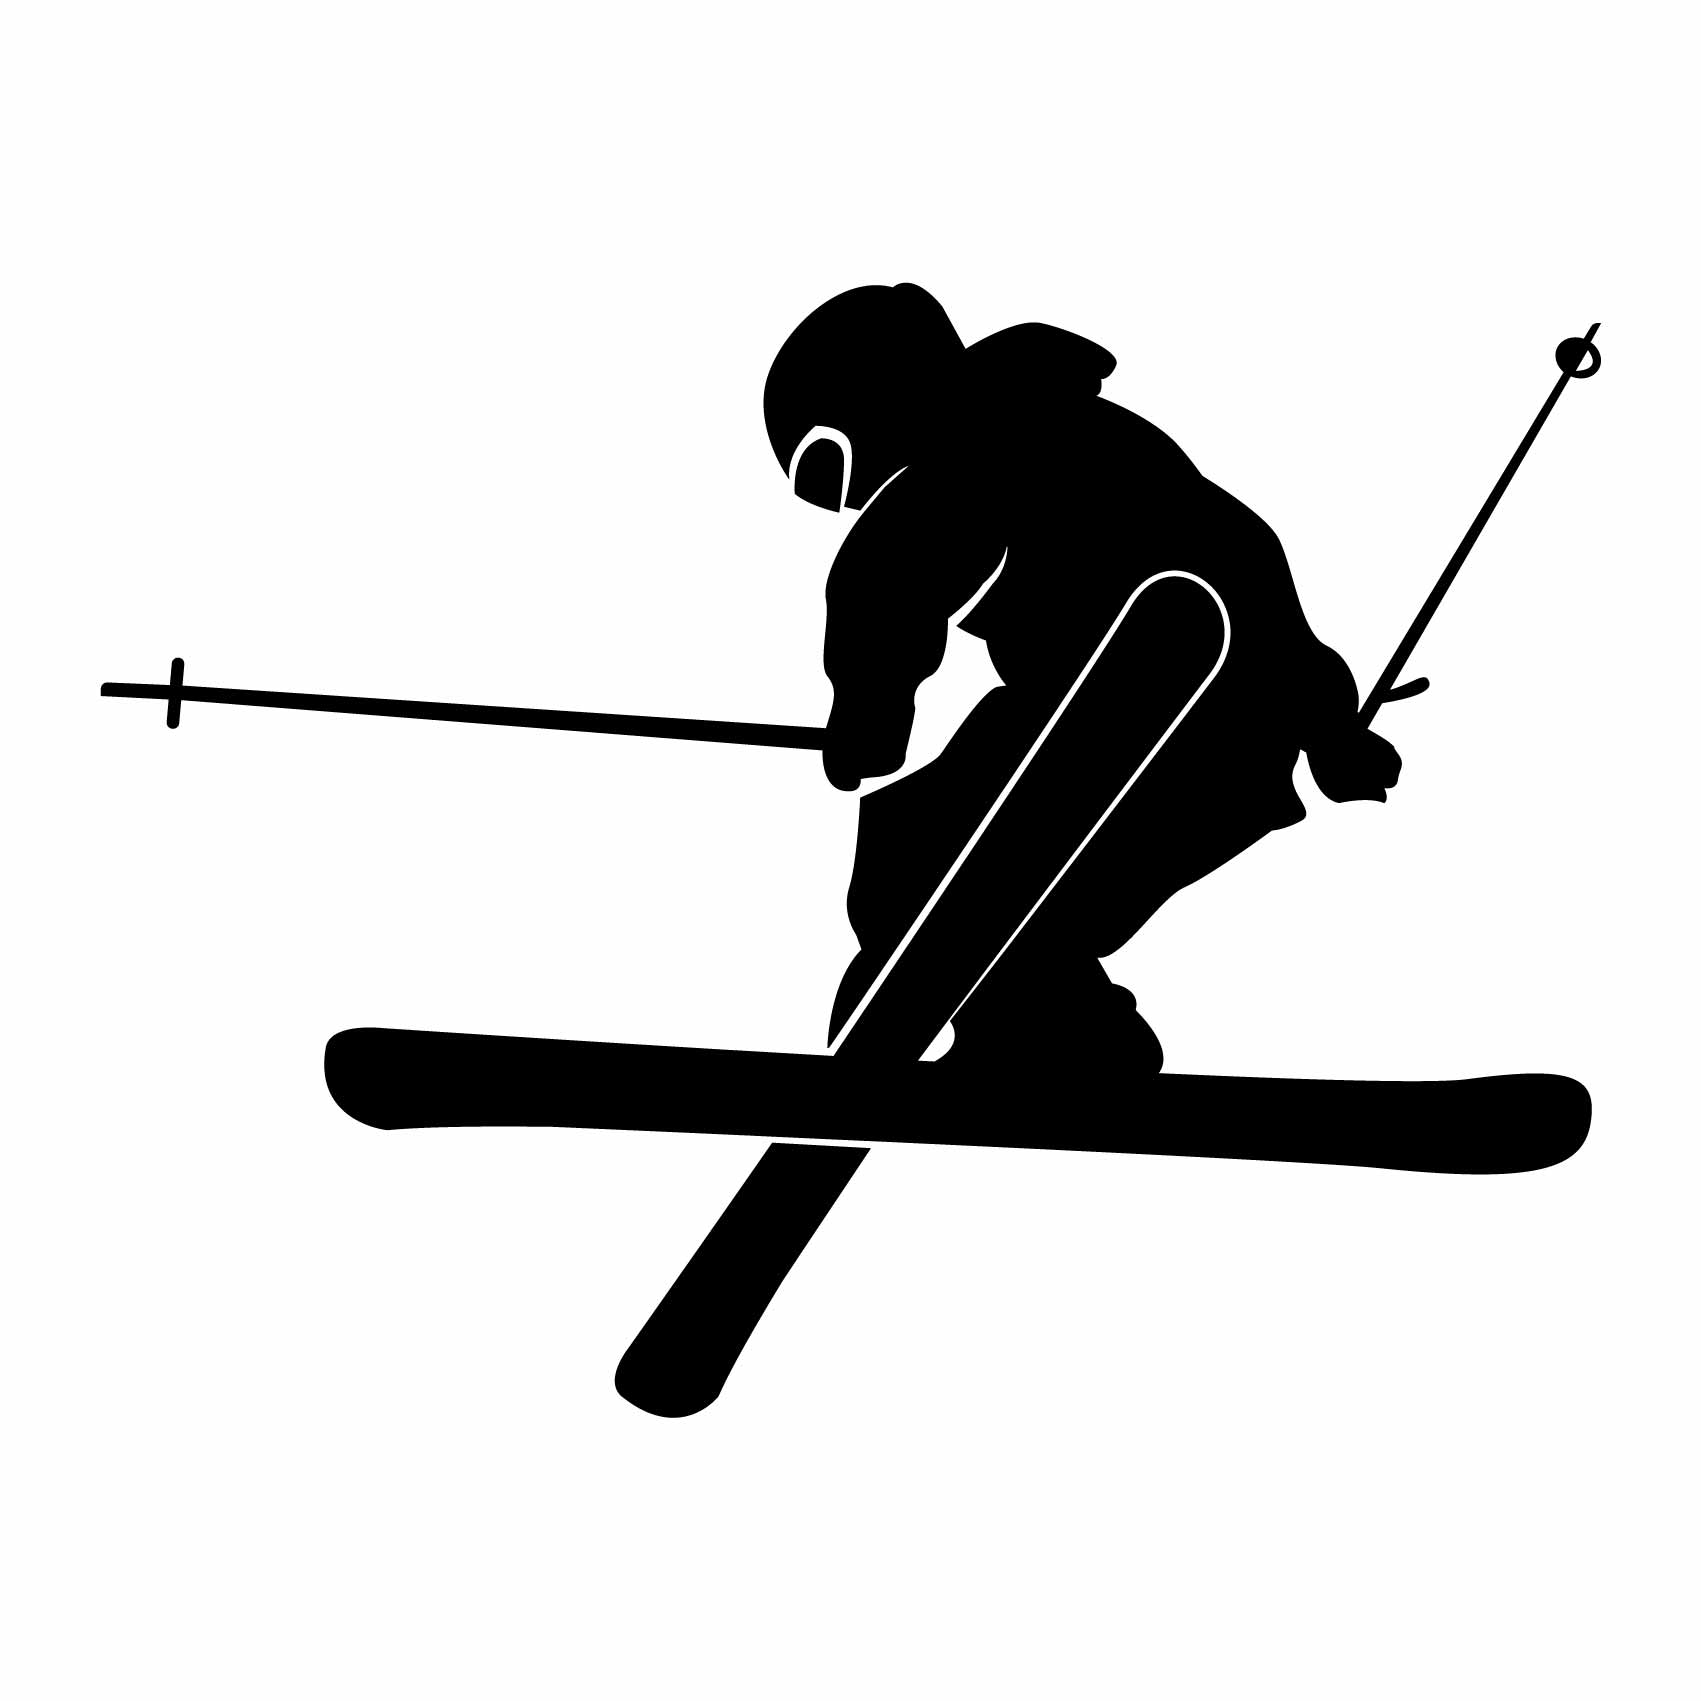 stickers-saut-ski-ref39silhouette-stickers-muraux-silhouette-autocollant-chambre-salon-sticker-mural-ombre-(2)